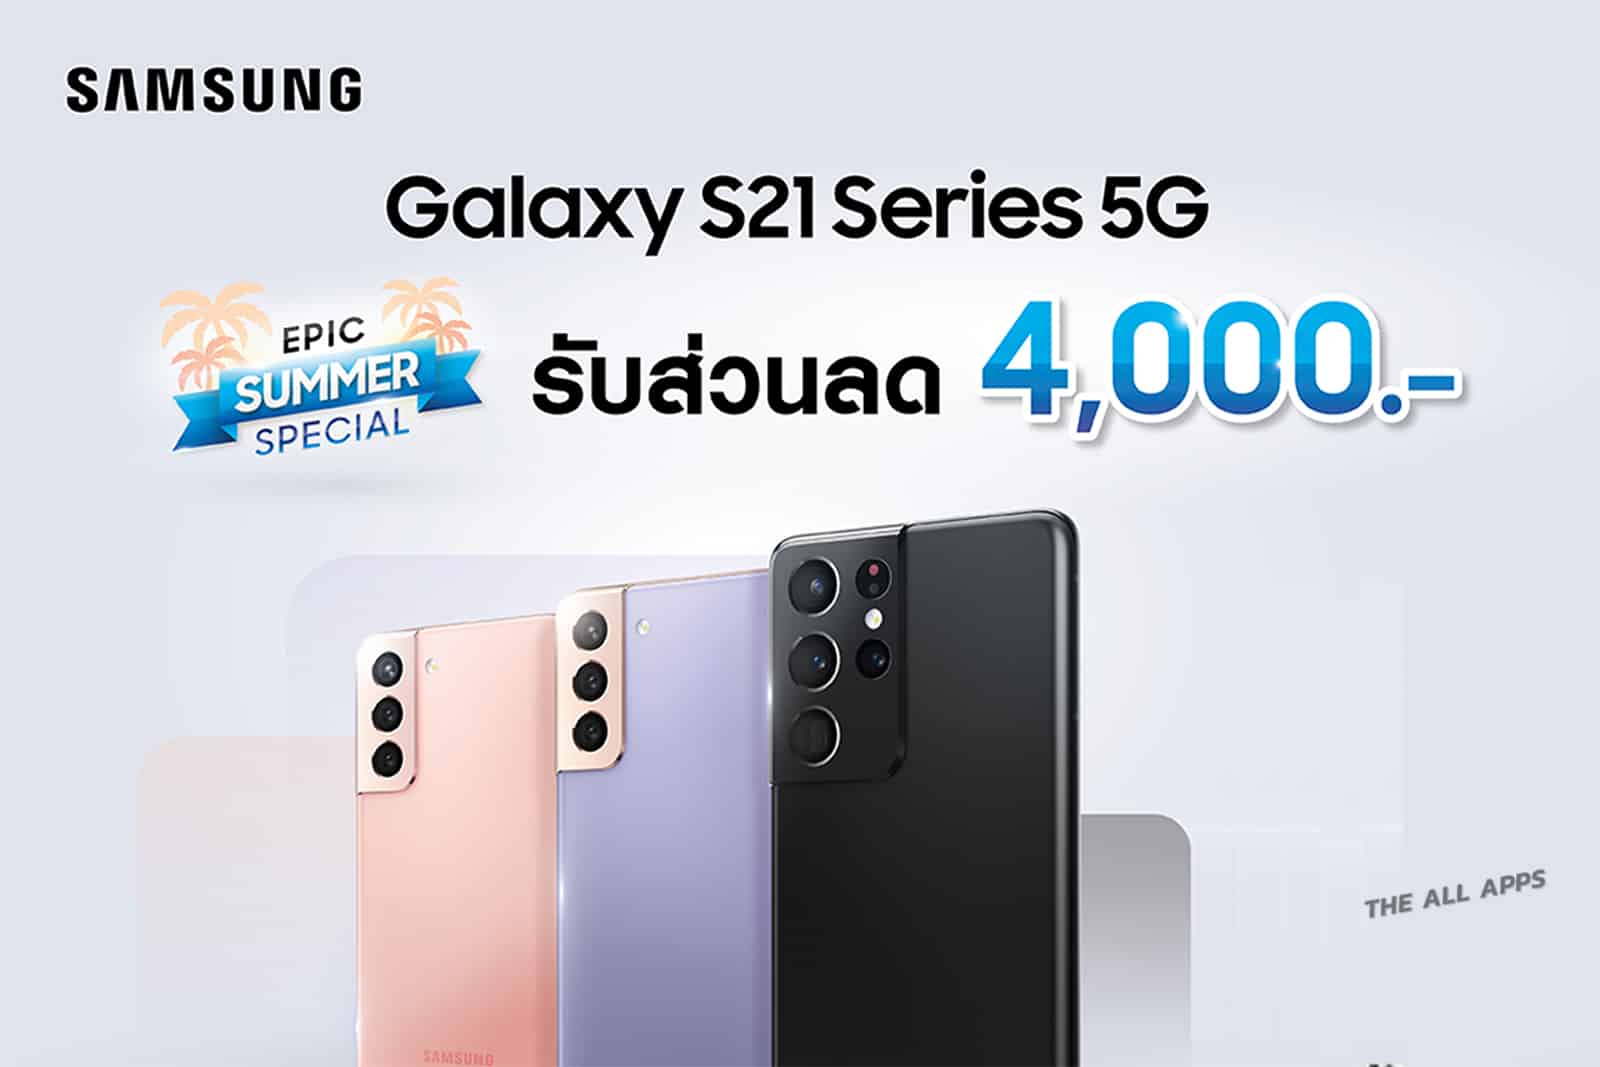 ซัมซุงจัดโปรโมชั่น "Epic Summer Special" ซื้อ Samsung Galaxy S21 Series 5G วันนี้ รับส่วนลด 4,000 บาททันที! พร้อมต่อแคมเปญ "เก่าแลกใหม่"